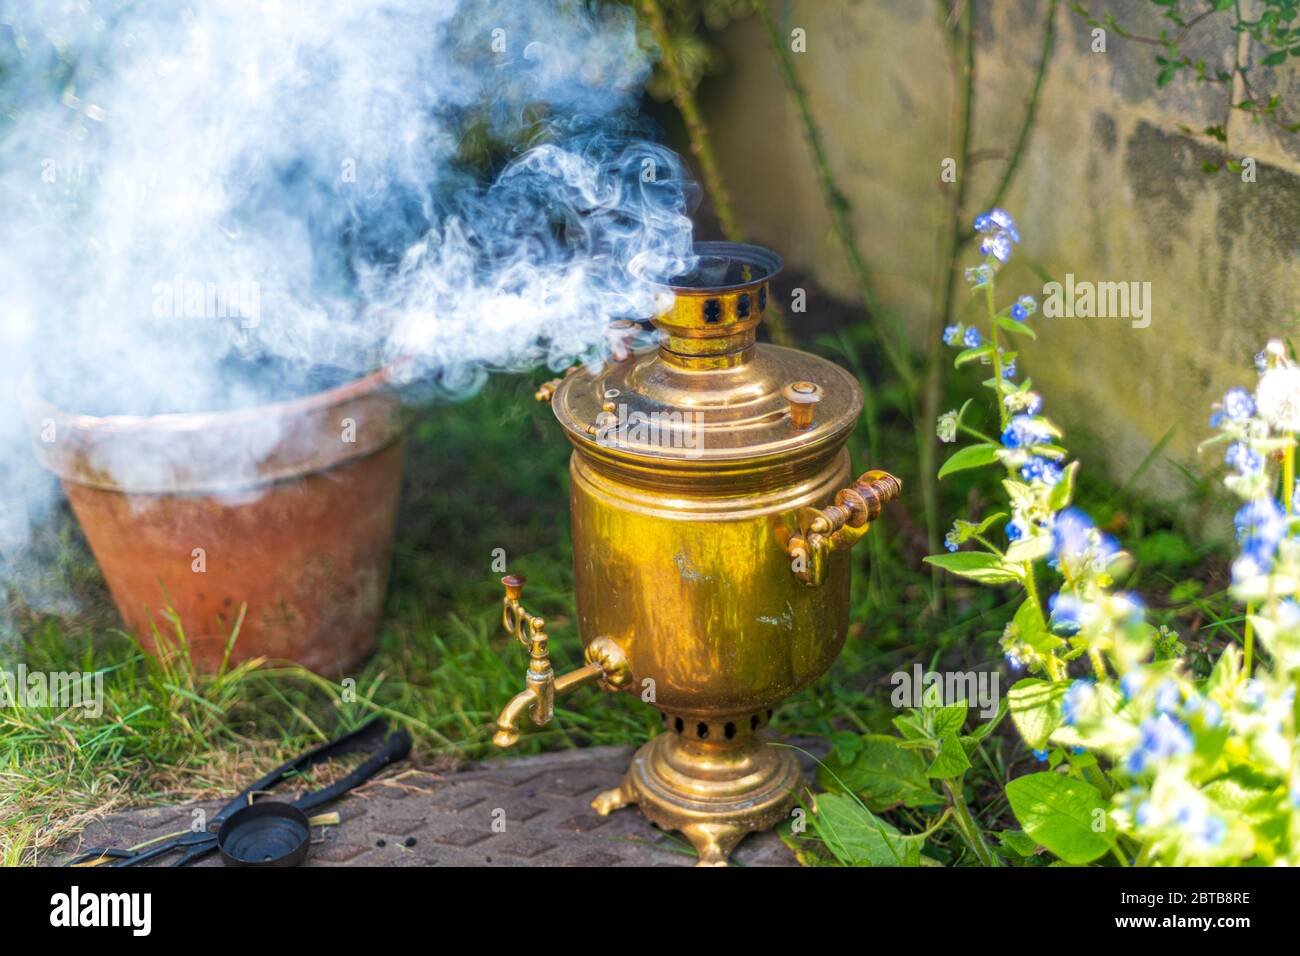 Ancien samovar vintage avec fumée. Préparer du thé à l'ancienne. Cérémonie russe Banque D'Images